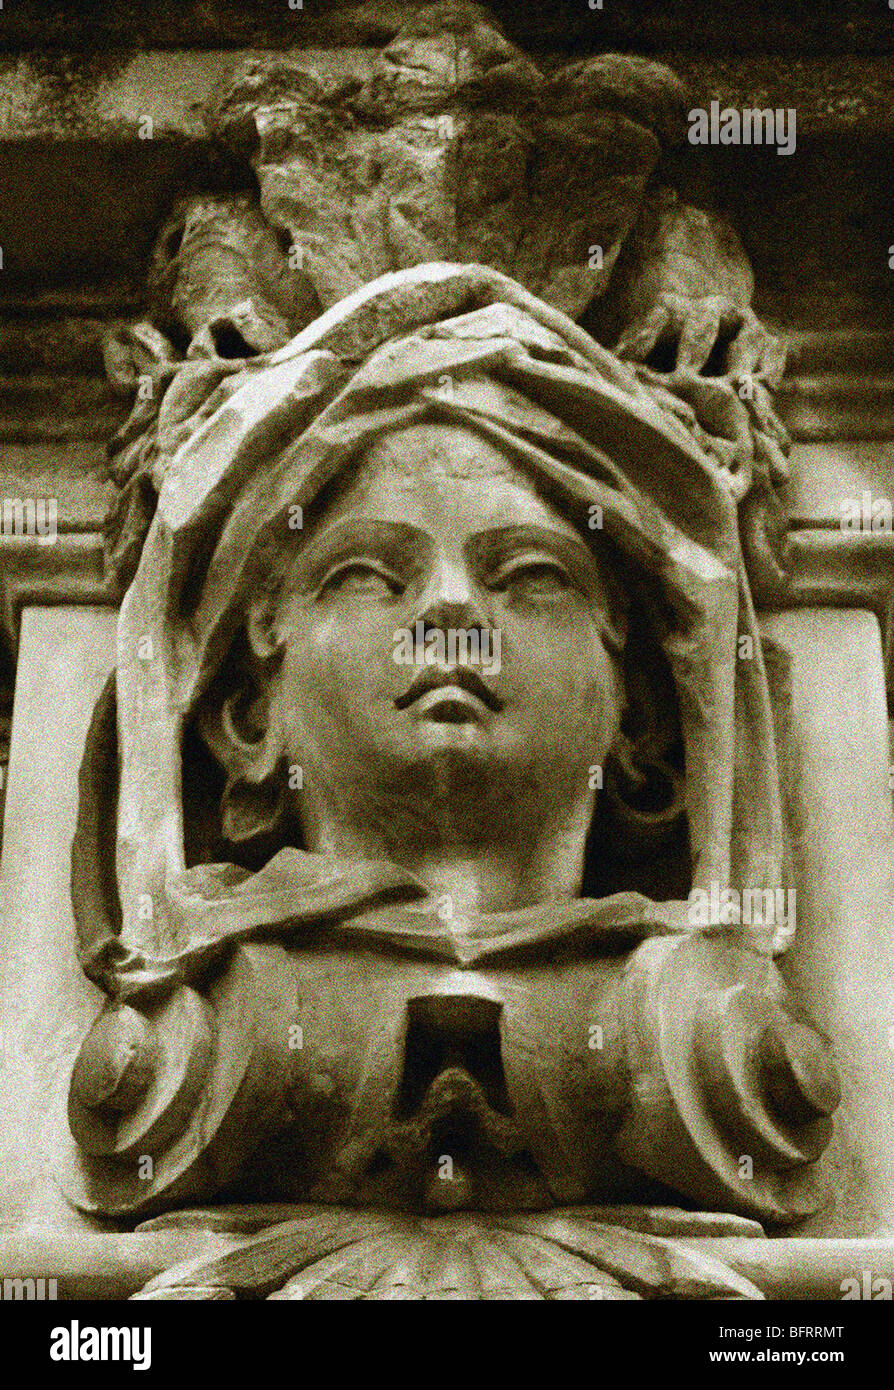 Tête de la sculpture en pierre représentant une femme Océanie situé au-dessus de l'entrée à l'hôtel Belfast Masmoulin. Banque D'Images